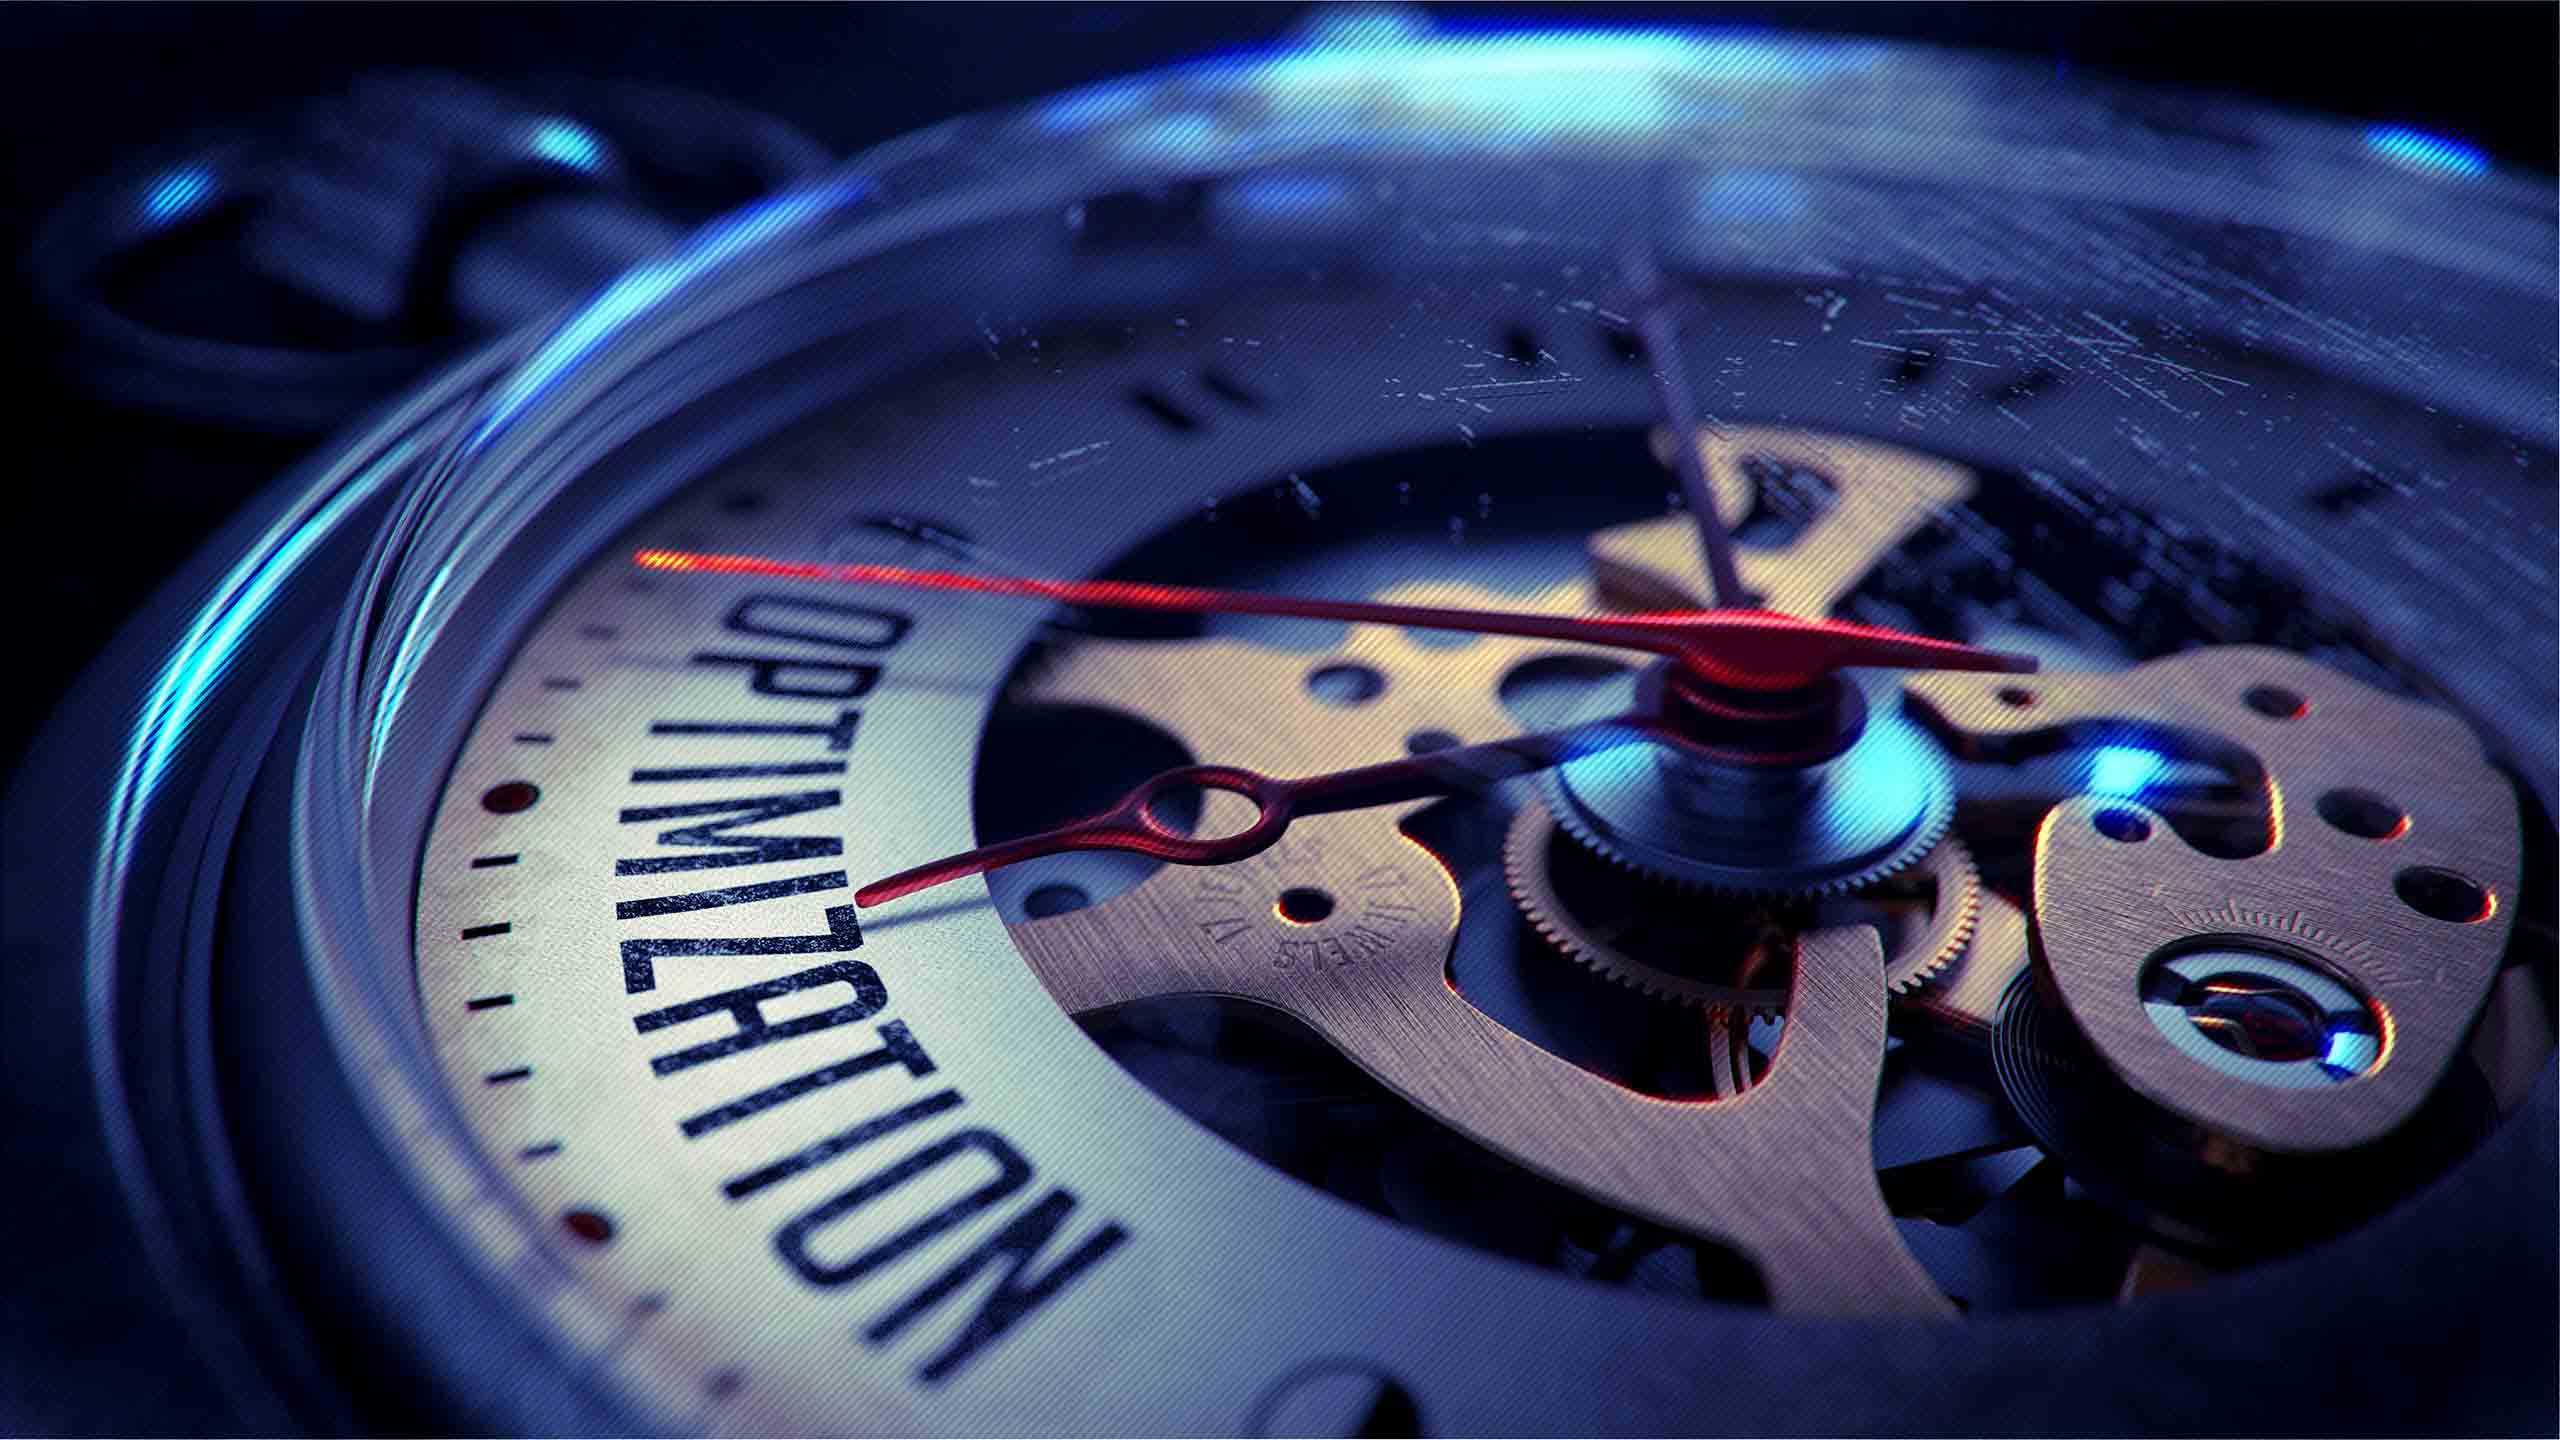 Ordet Optimization illustrerat på ett fickur med närbild på urets mekanism.